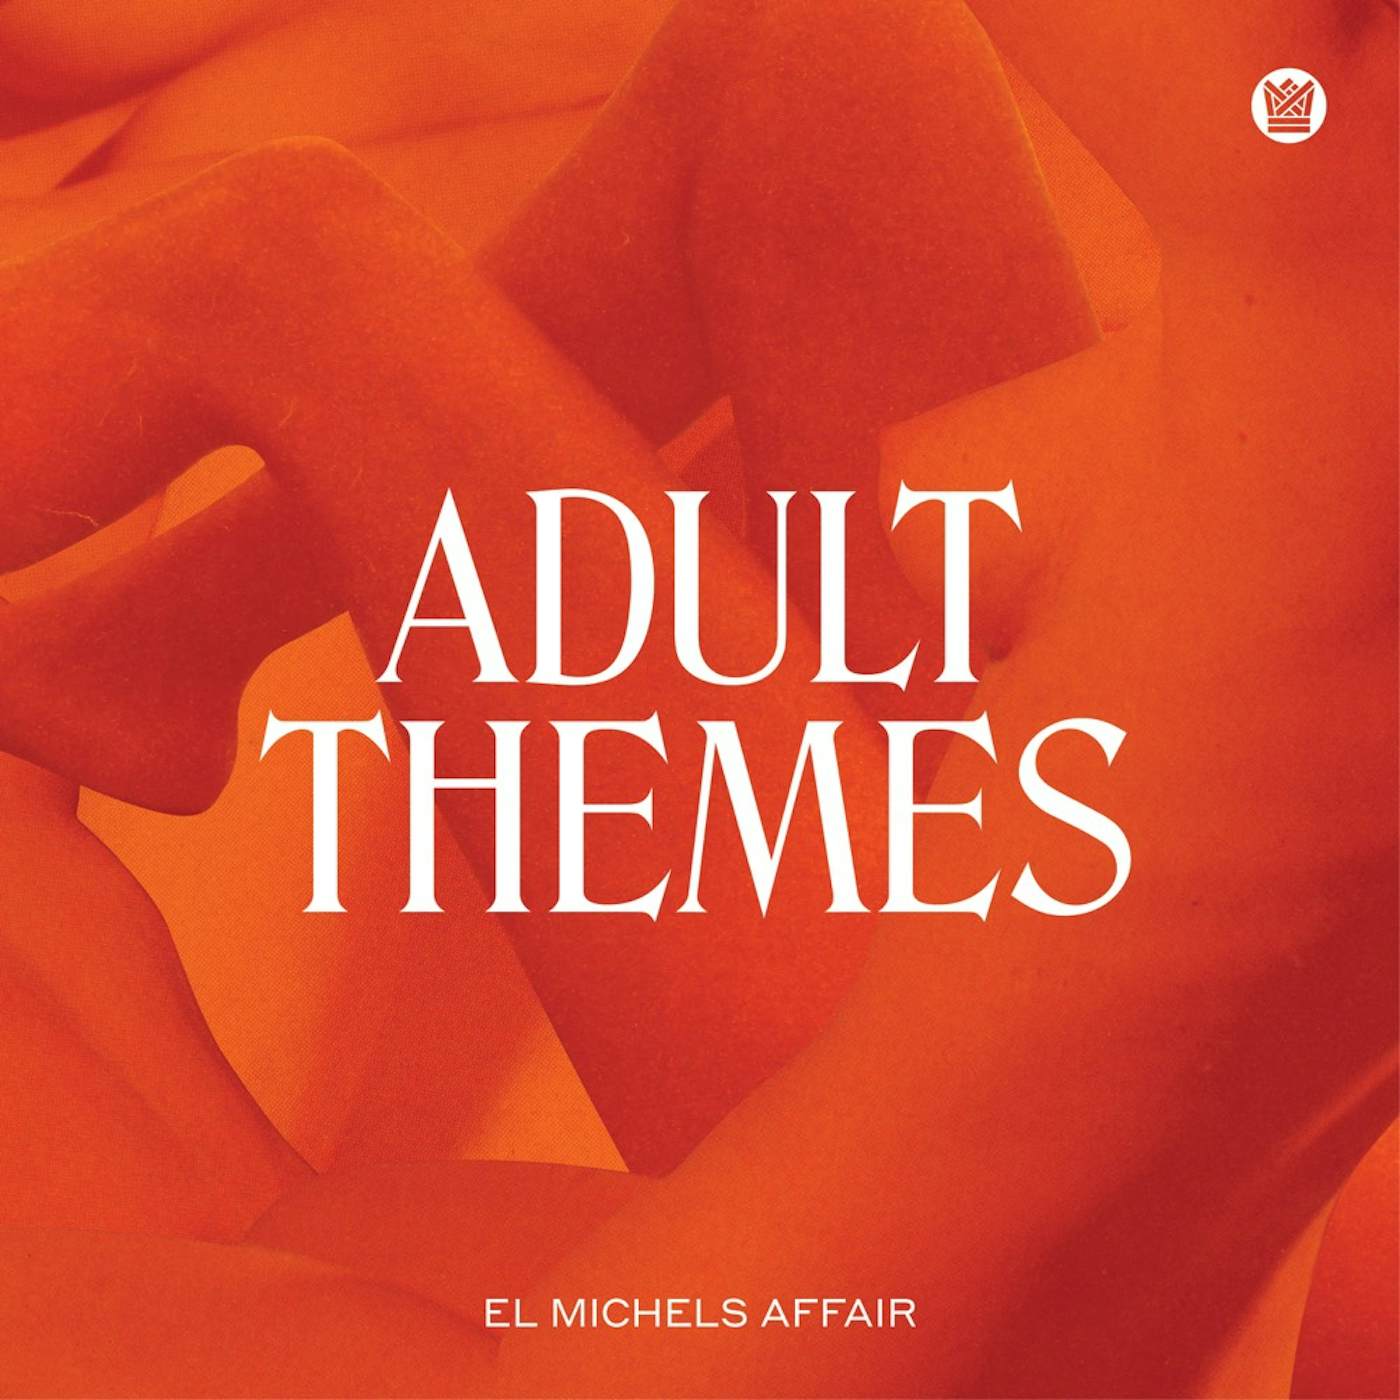 El Michels Affair Adult Themes Vinyl Record